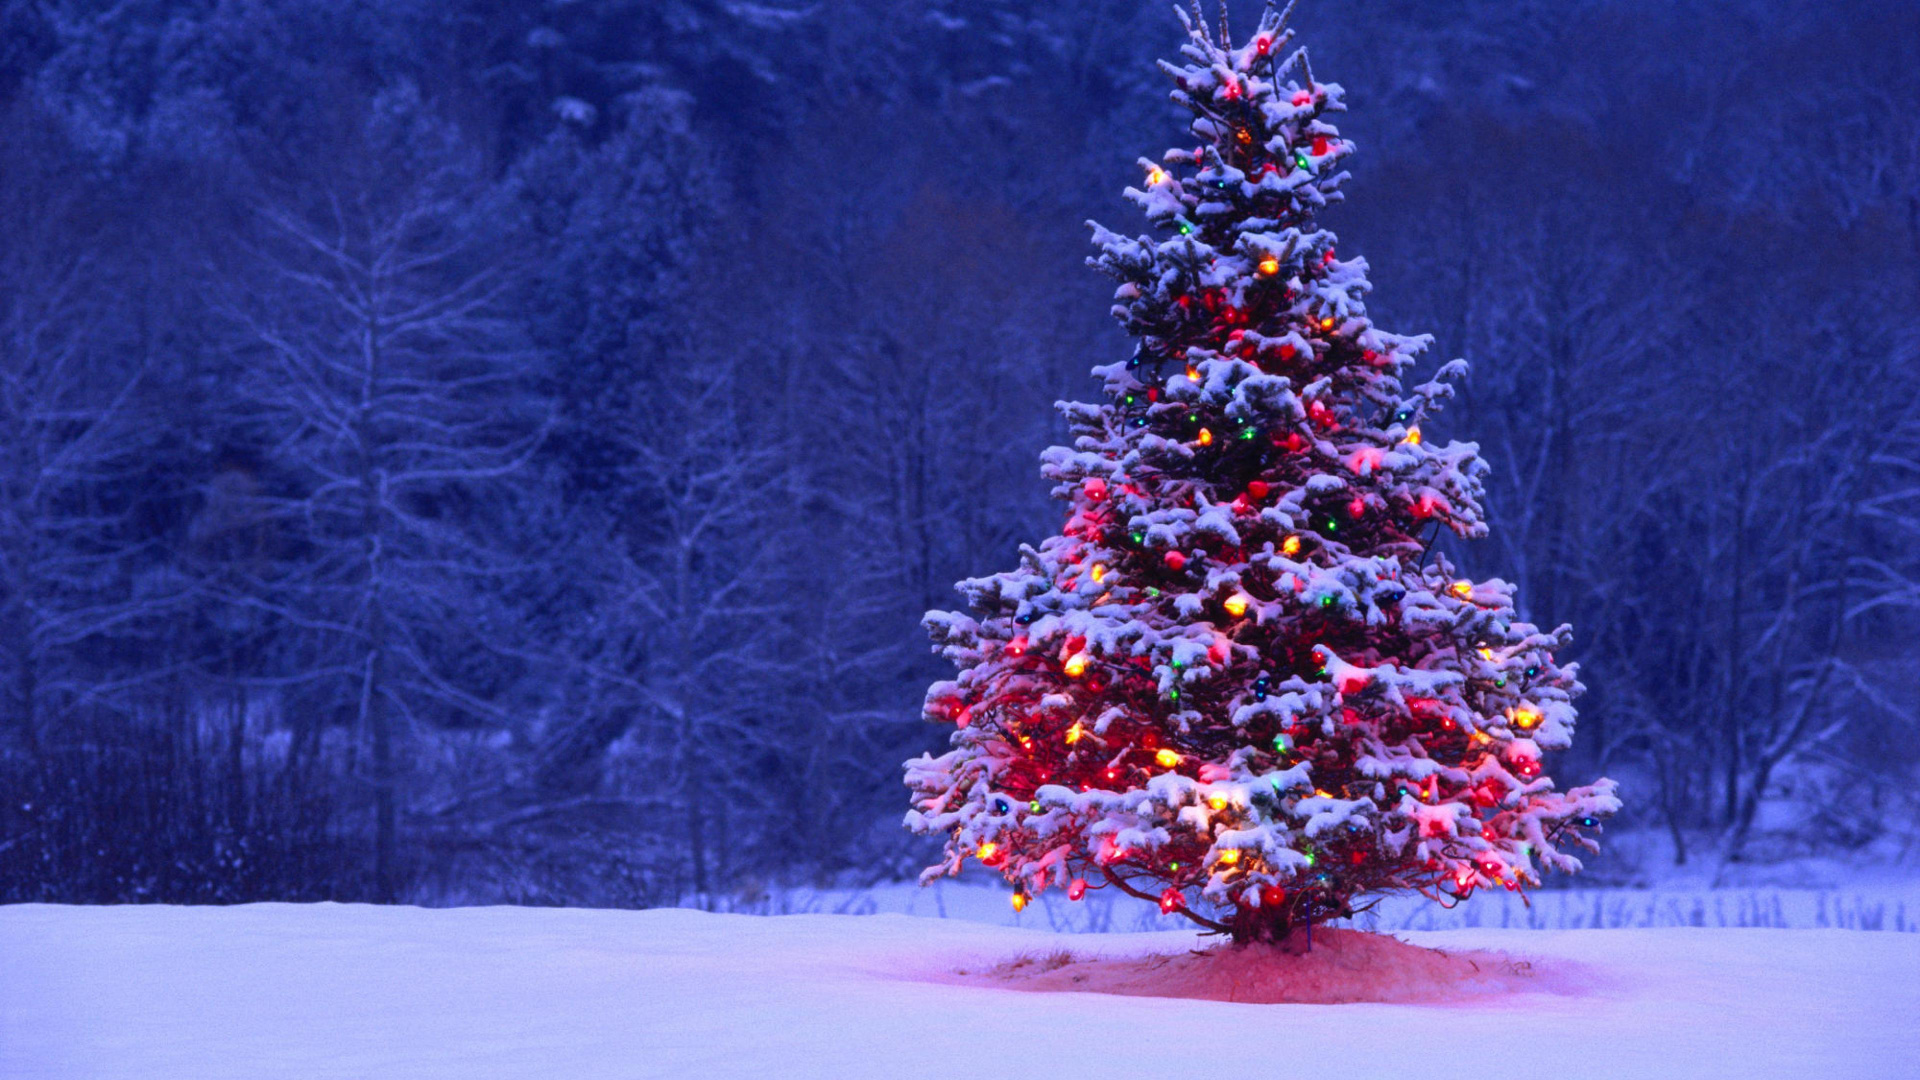 Weihnachten, Weihnachtsbaum, Weihnachtsdekoration, Winter, Baum. Wallpaper in 1920x1080 Resolution